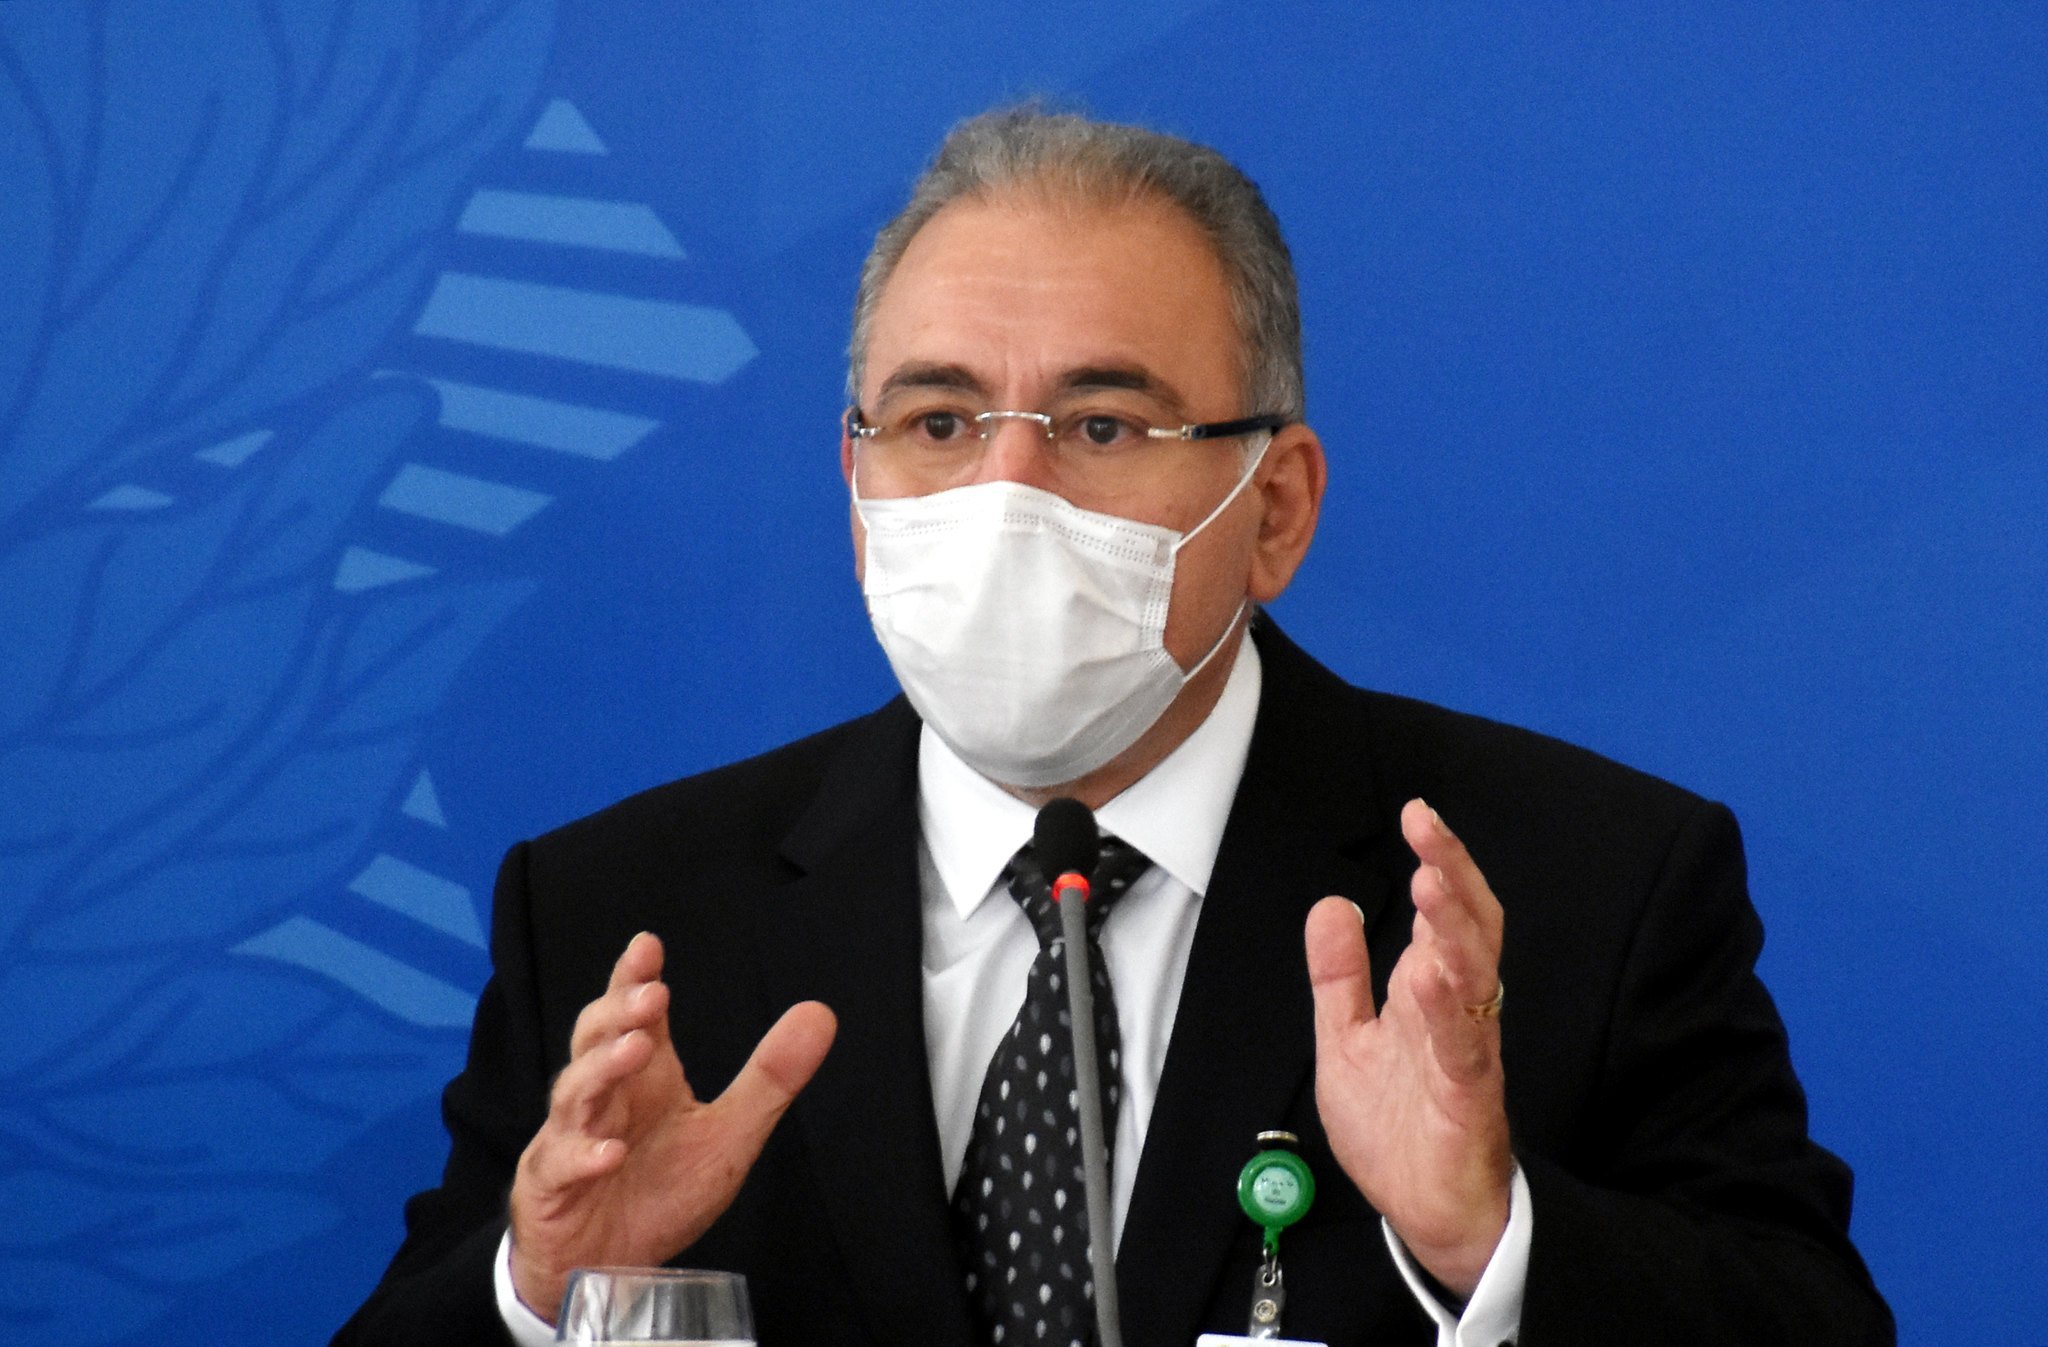 O ministro da Saúde, Marcelo Queiroga, participou, na manhã desta quarta-feira (31/03), da primeira reunião do Comitê de Coordenação Nacional para Enfrentamento da Pandemia da Covid-19